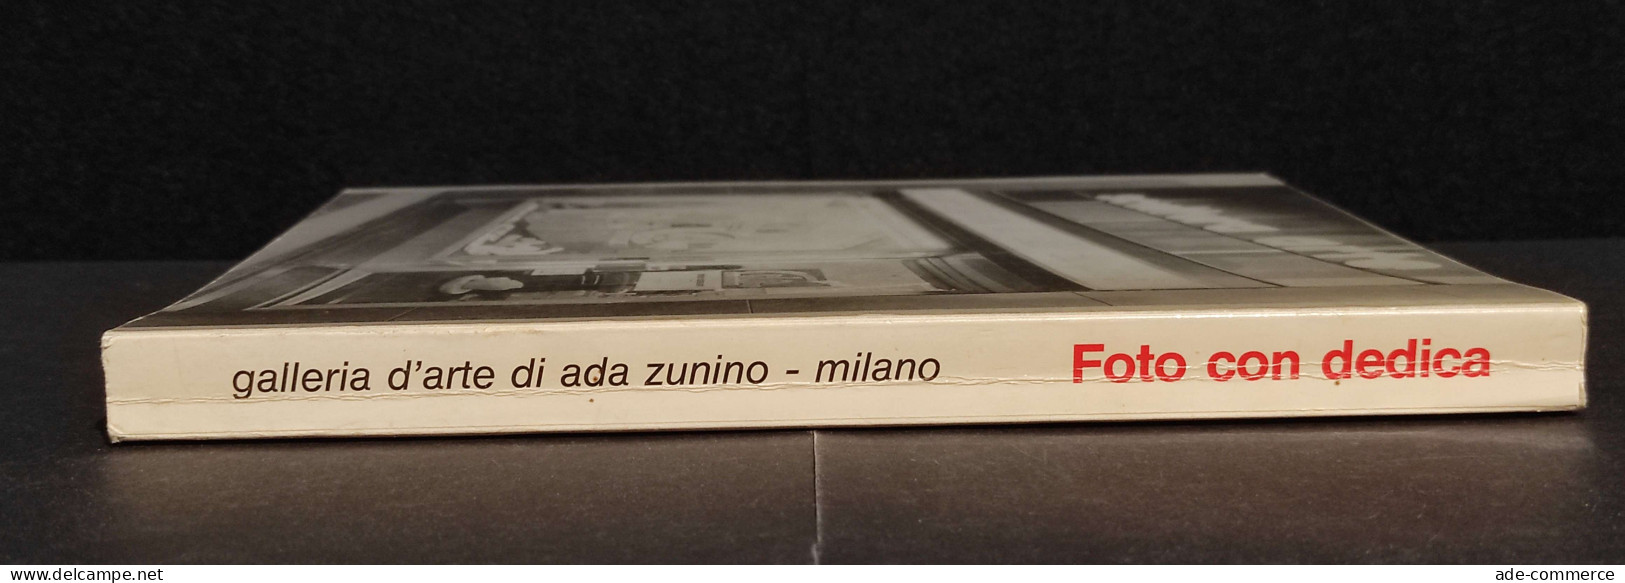 Foto Con Dedica - Ada Zunino Gli Artisti Gli Amici - 1983 - Fotografia